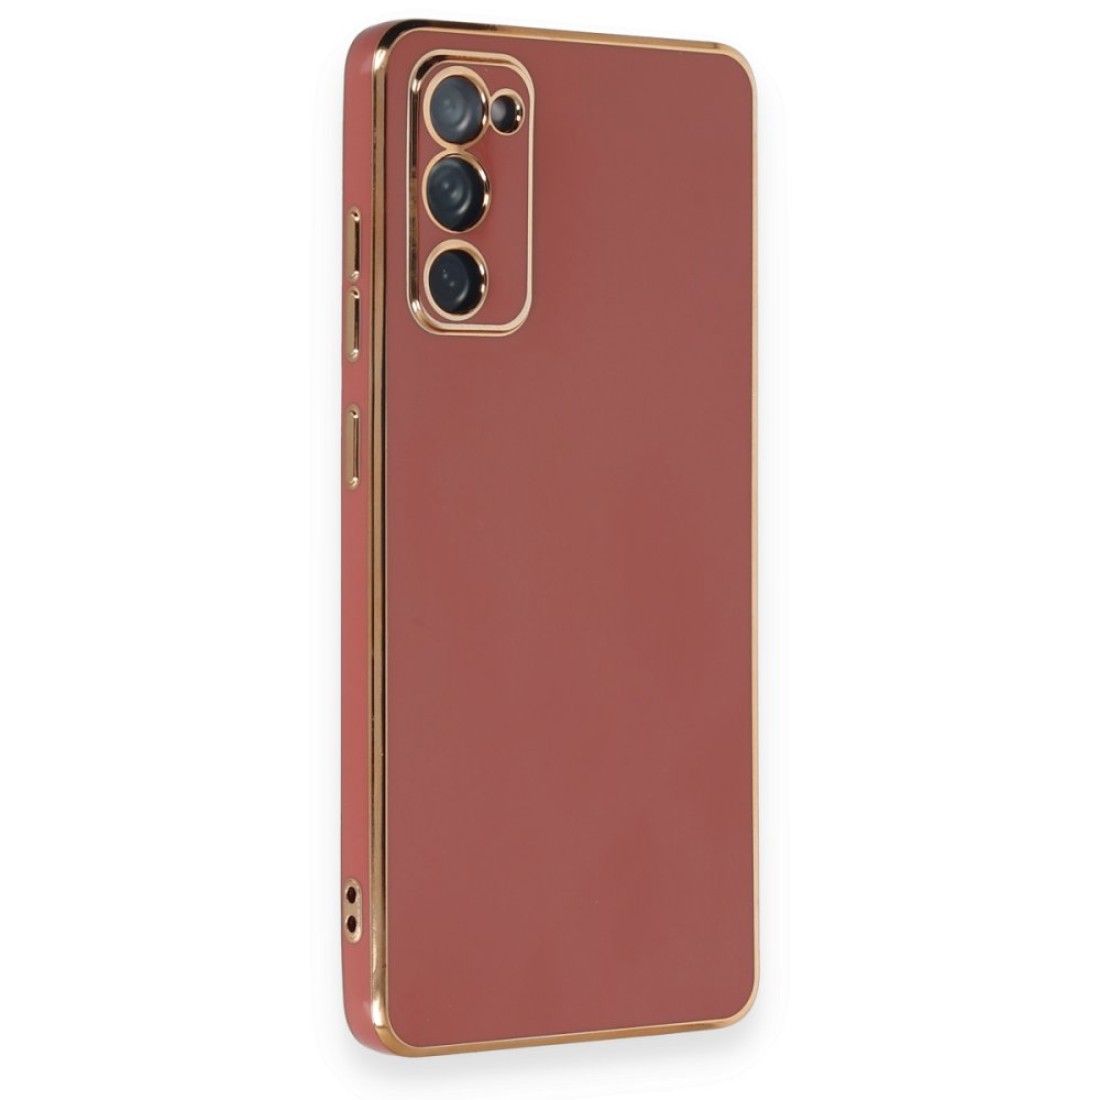 Samsung Galaxy S20 FE Kılıf Volet Silikon - Kırmızı